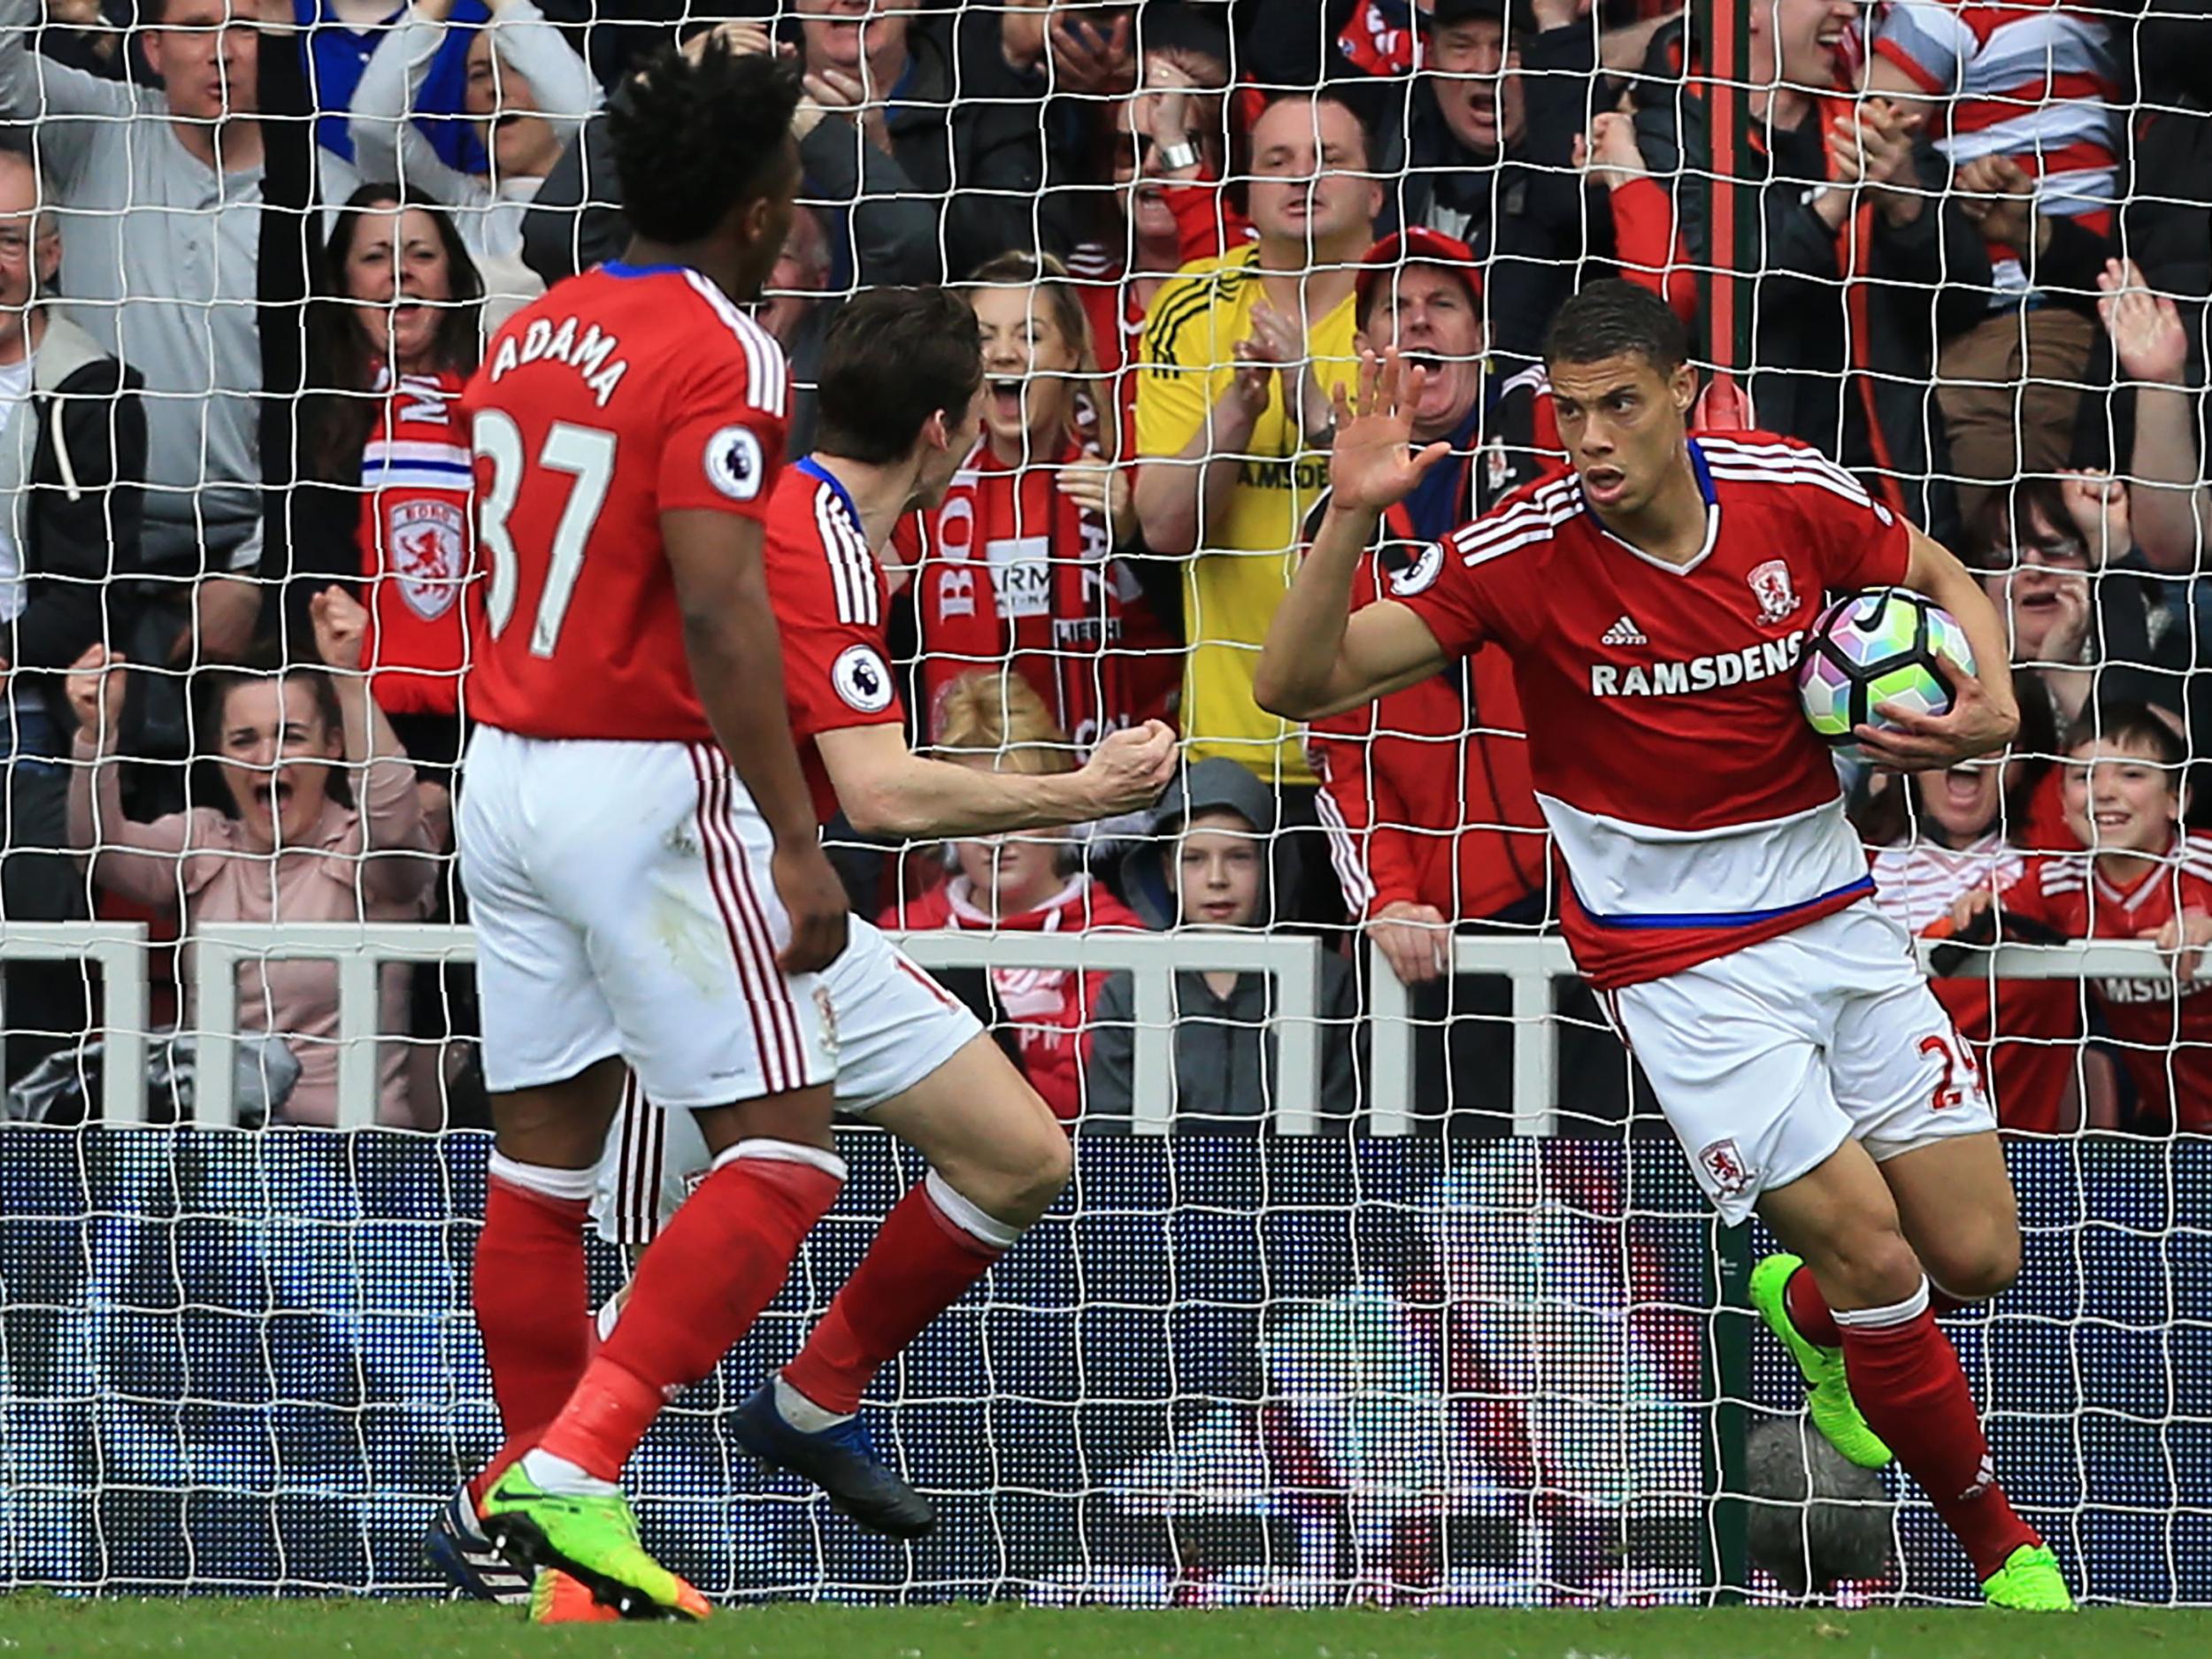 Gestede's goal gave Middlesbrough hope